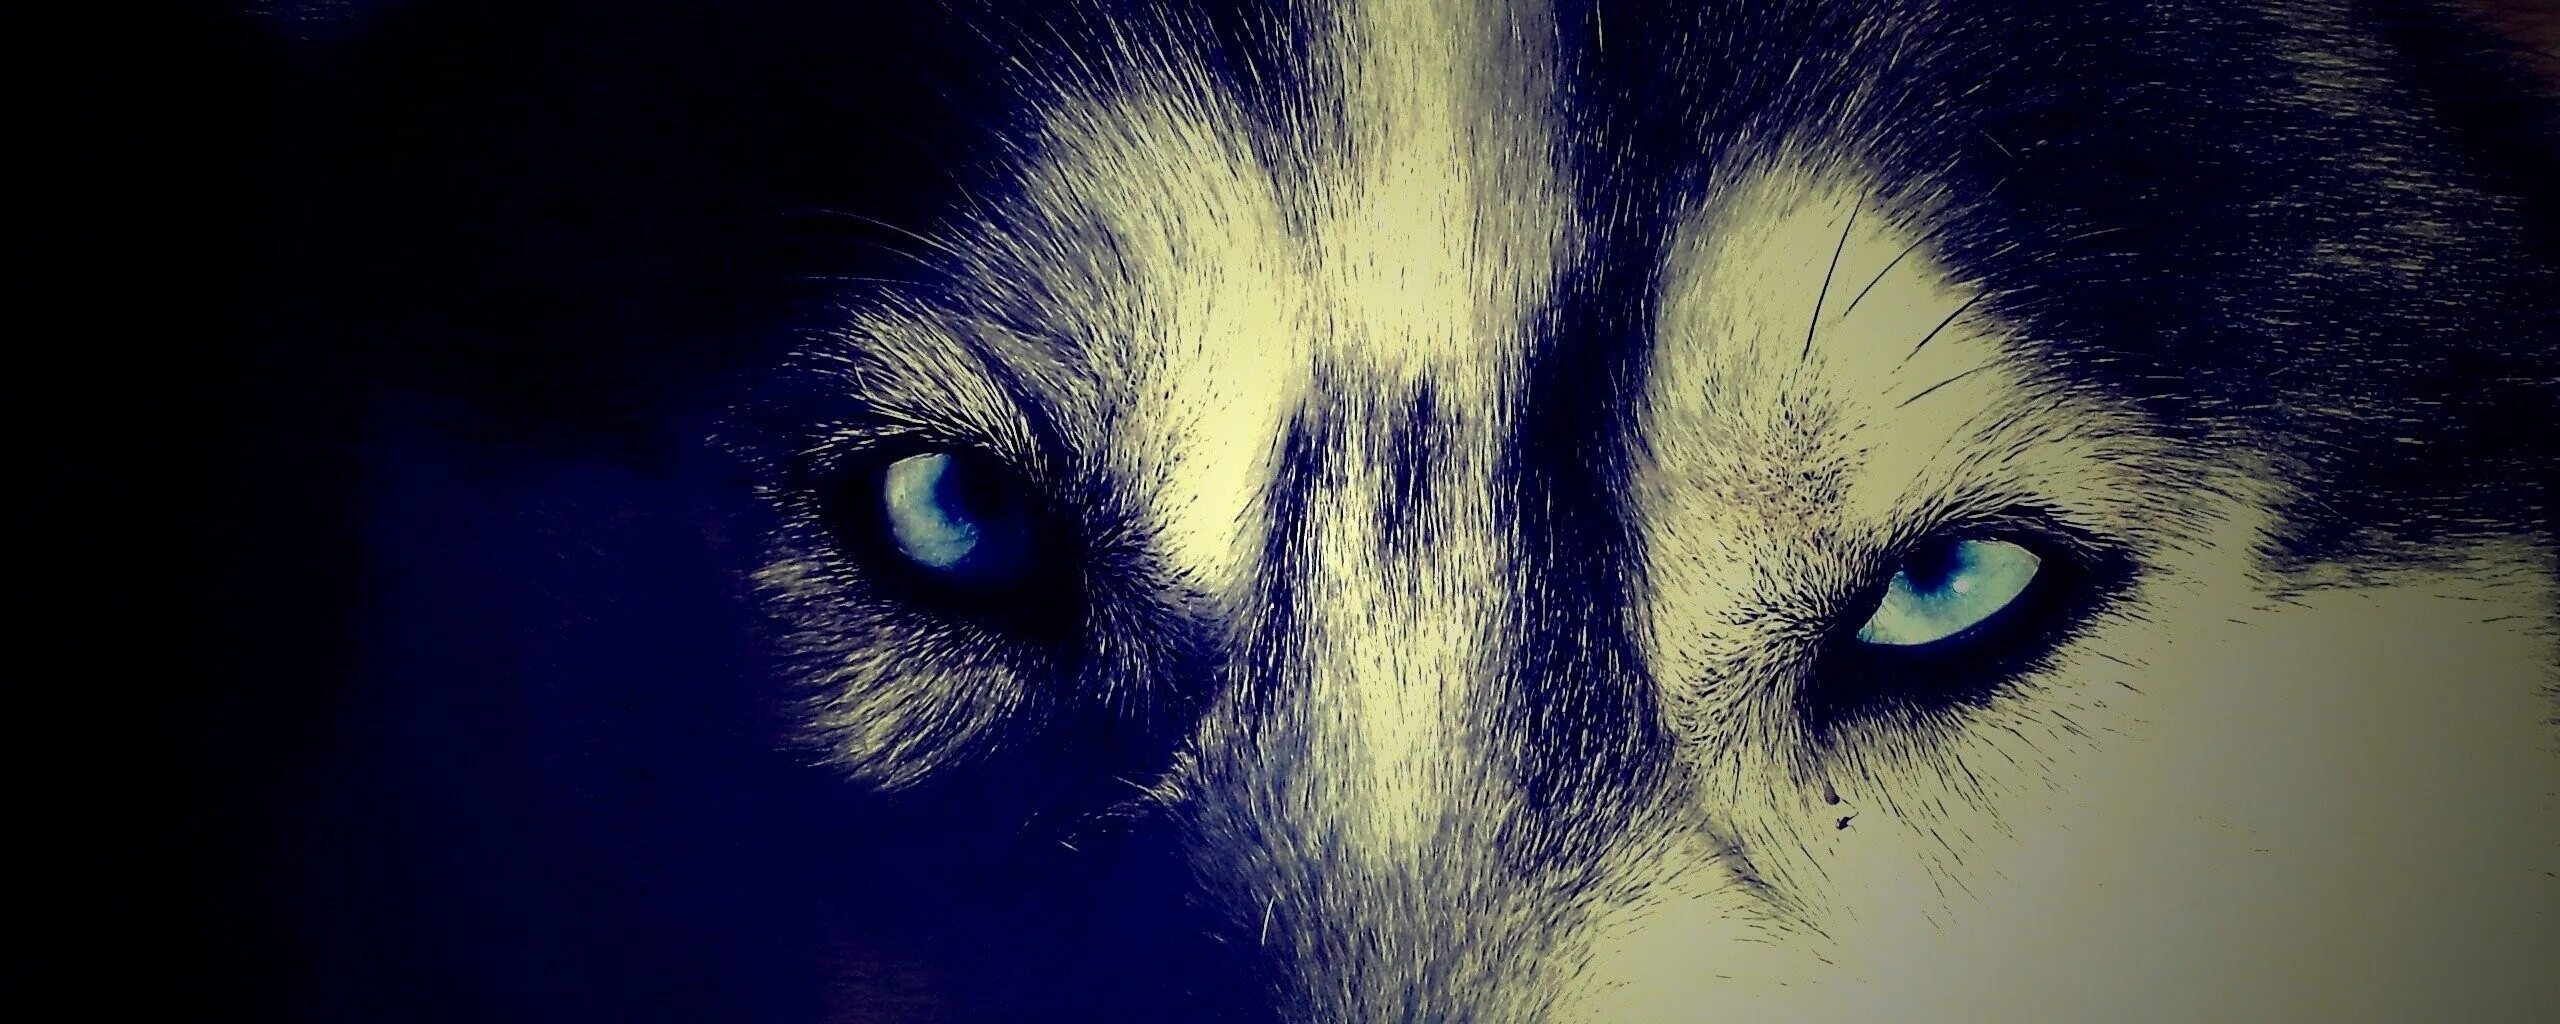 Глаза волка ночью. Глаза волка в темноте. Глаз волка. Волчьи глаза у человека. Взгляд волка у человека.